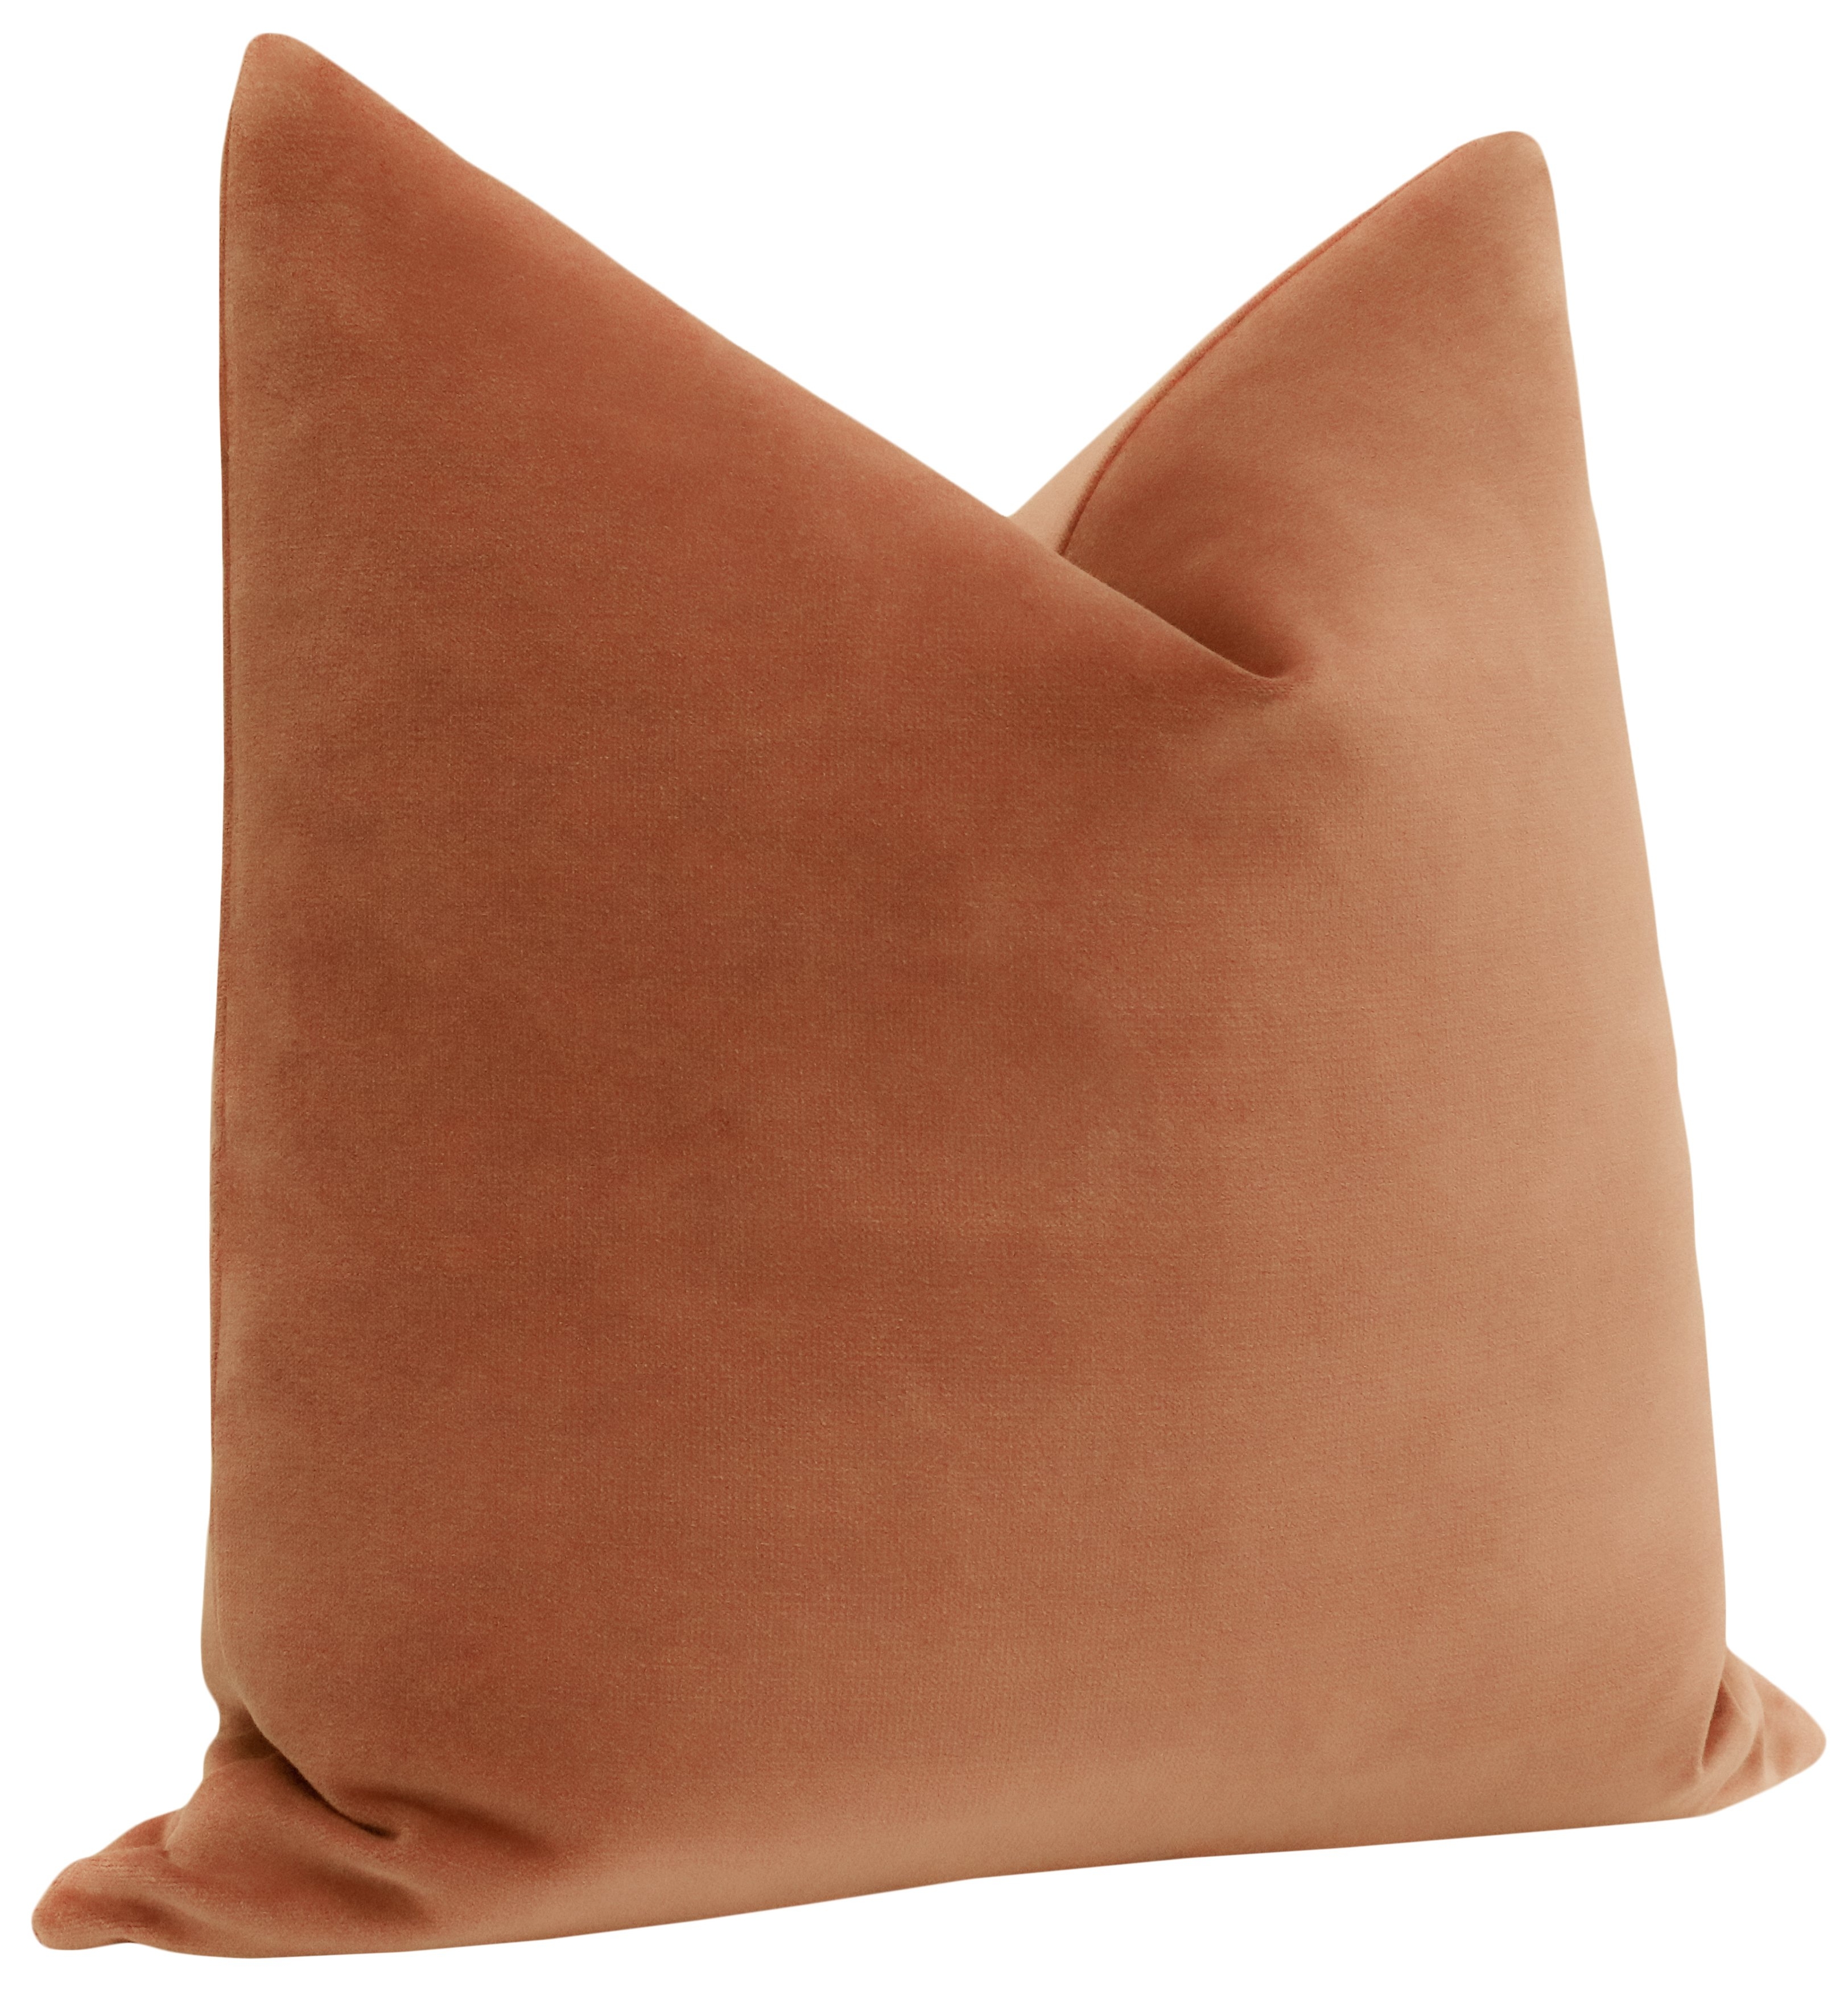 Classic Velvet Pillow Cover, Terracotta, 18" x 18" - Image 1